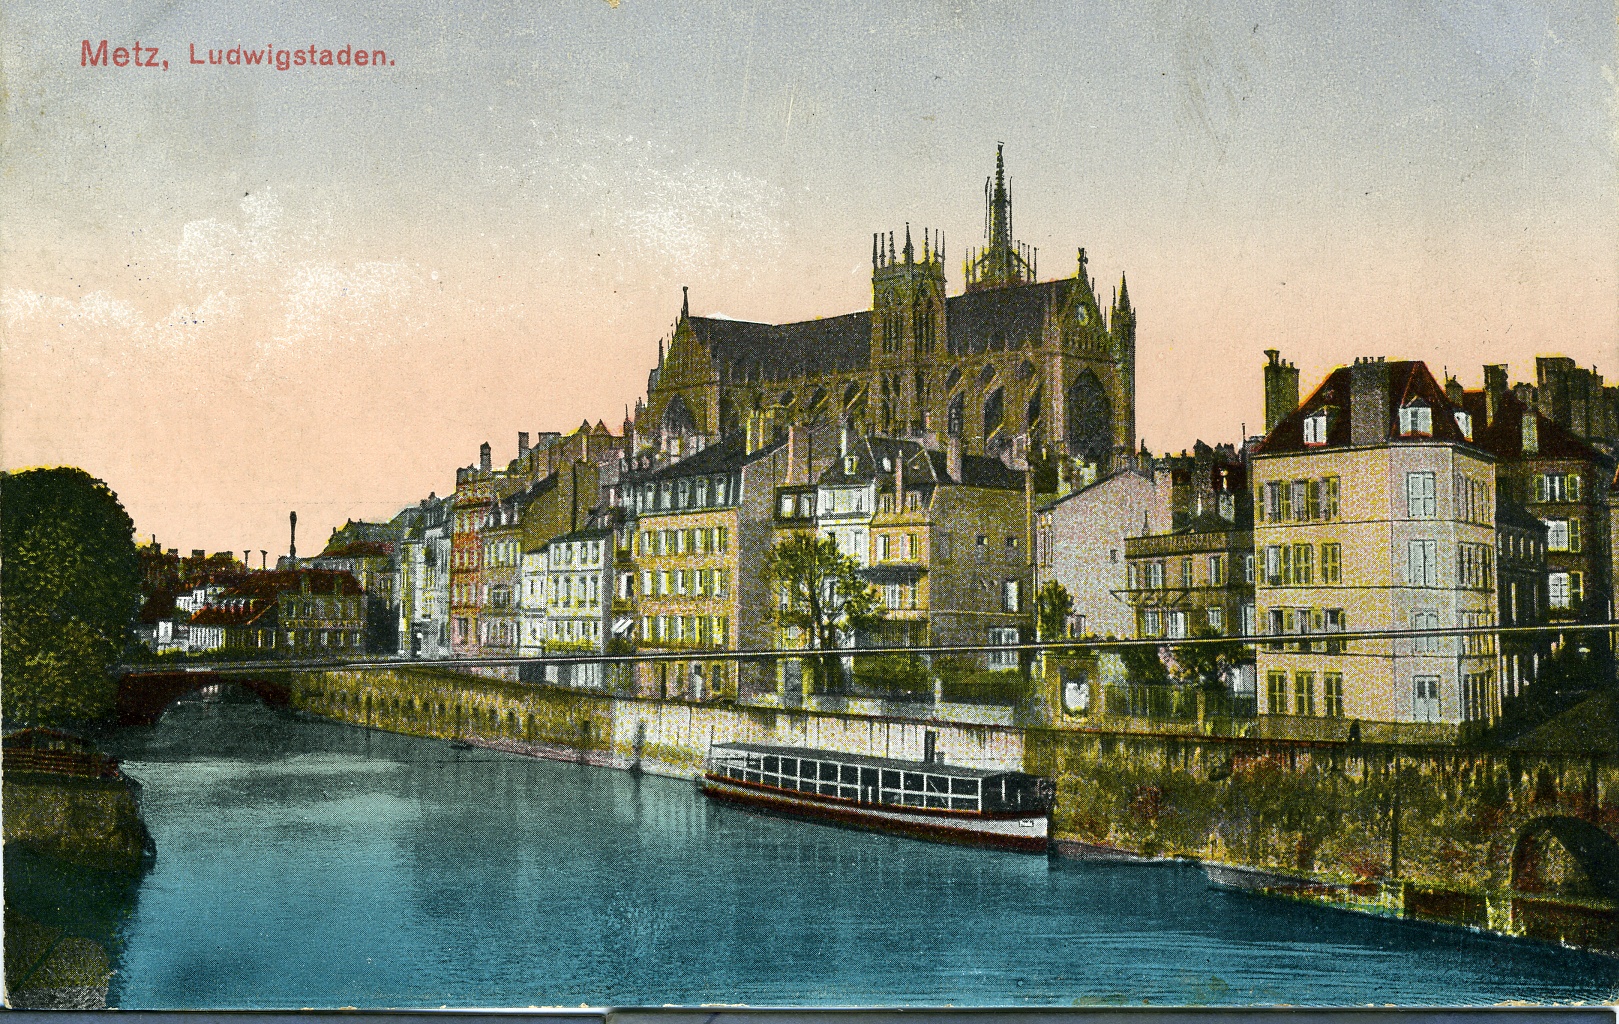 Fotopostkarte "Metz, Ludwigstaden" (Historisches Museum der Pfalz, Speyer CC BY)